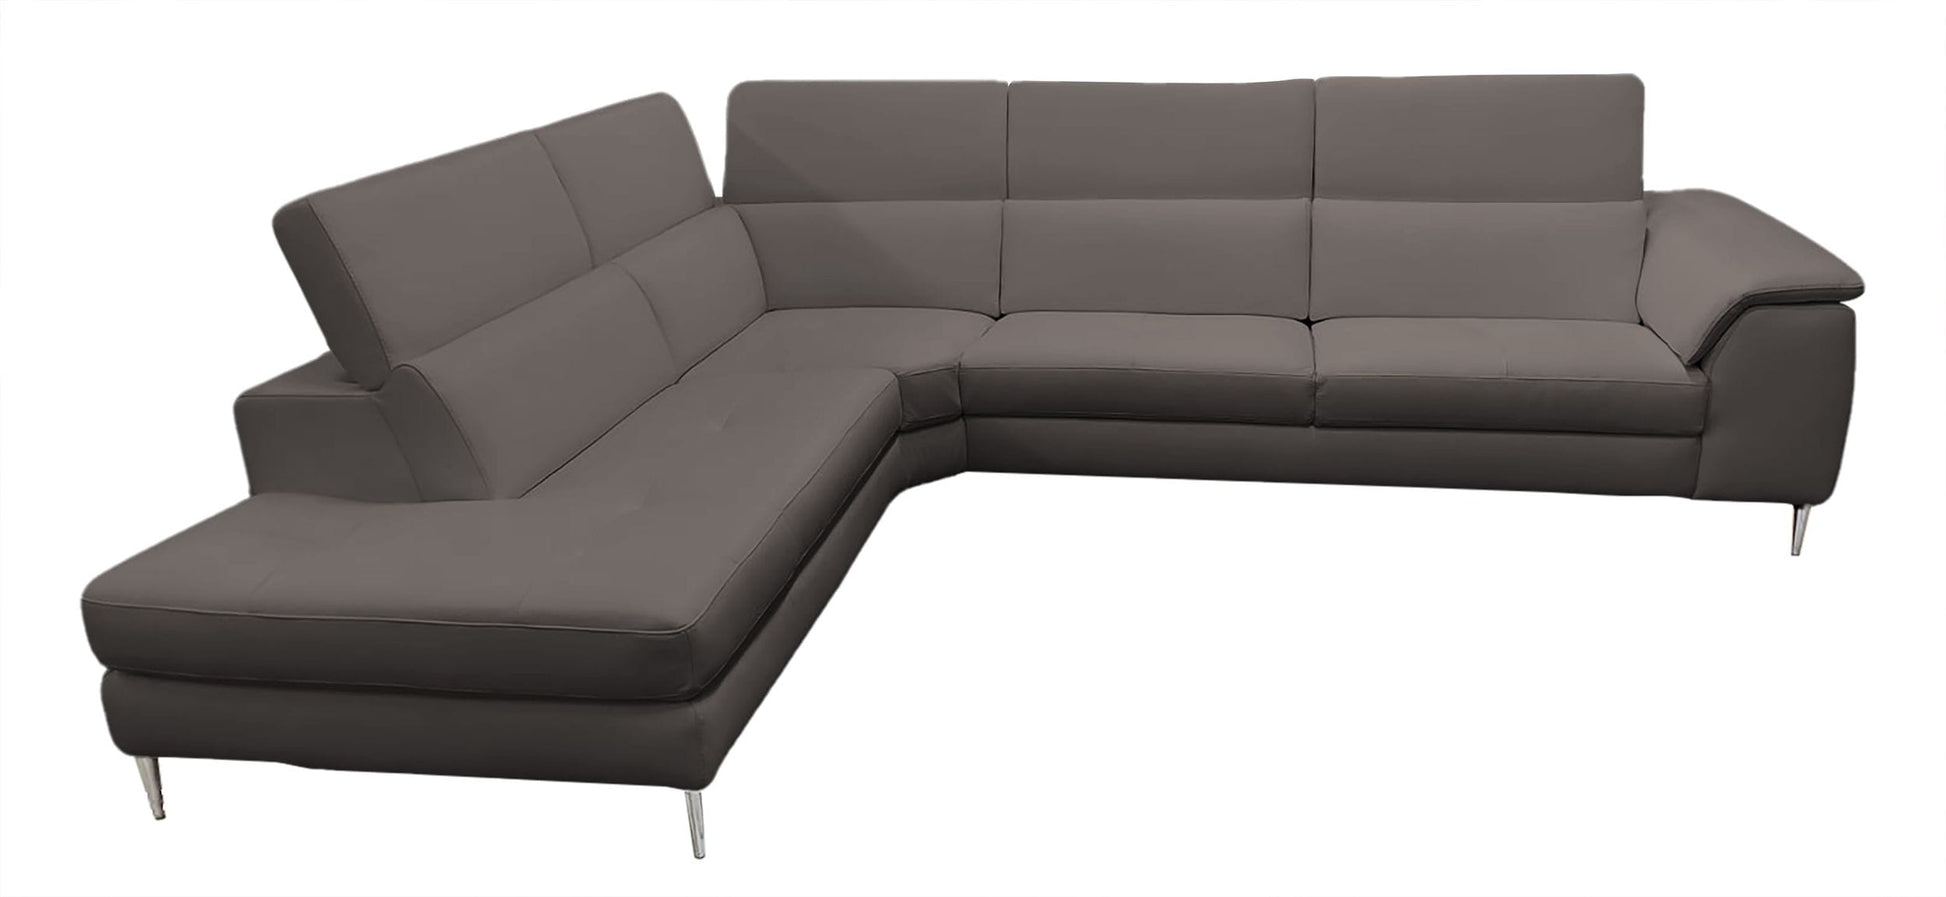 Coronelli Collezioni Viola - Italian Contemporary Brown Leather LAF Chaise Sectional Sofa | Sofas | Modishstore - 3